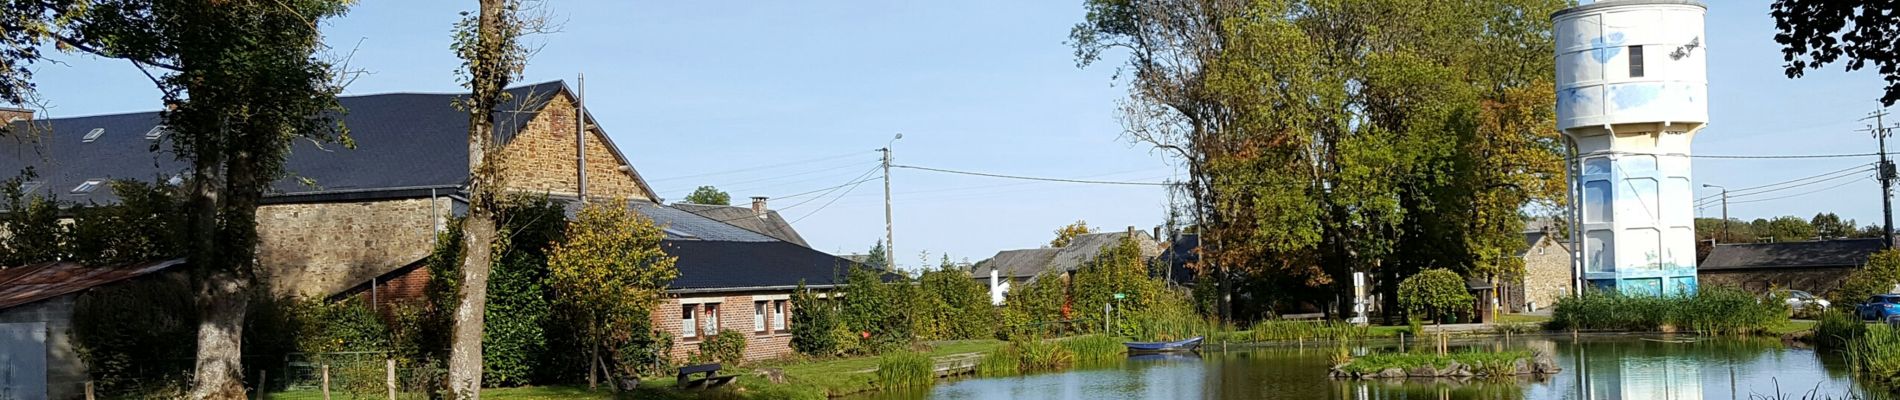 POI Nassogne - Watertoren en vijver - Photo